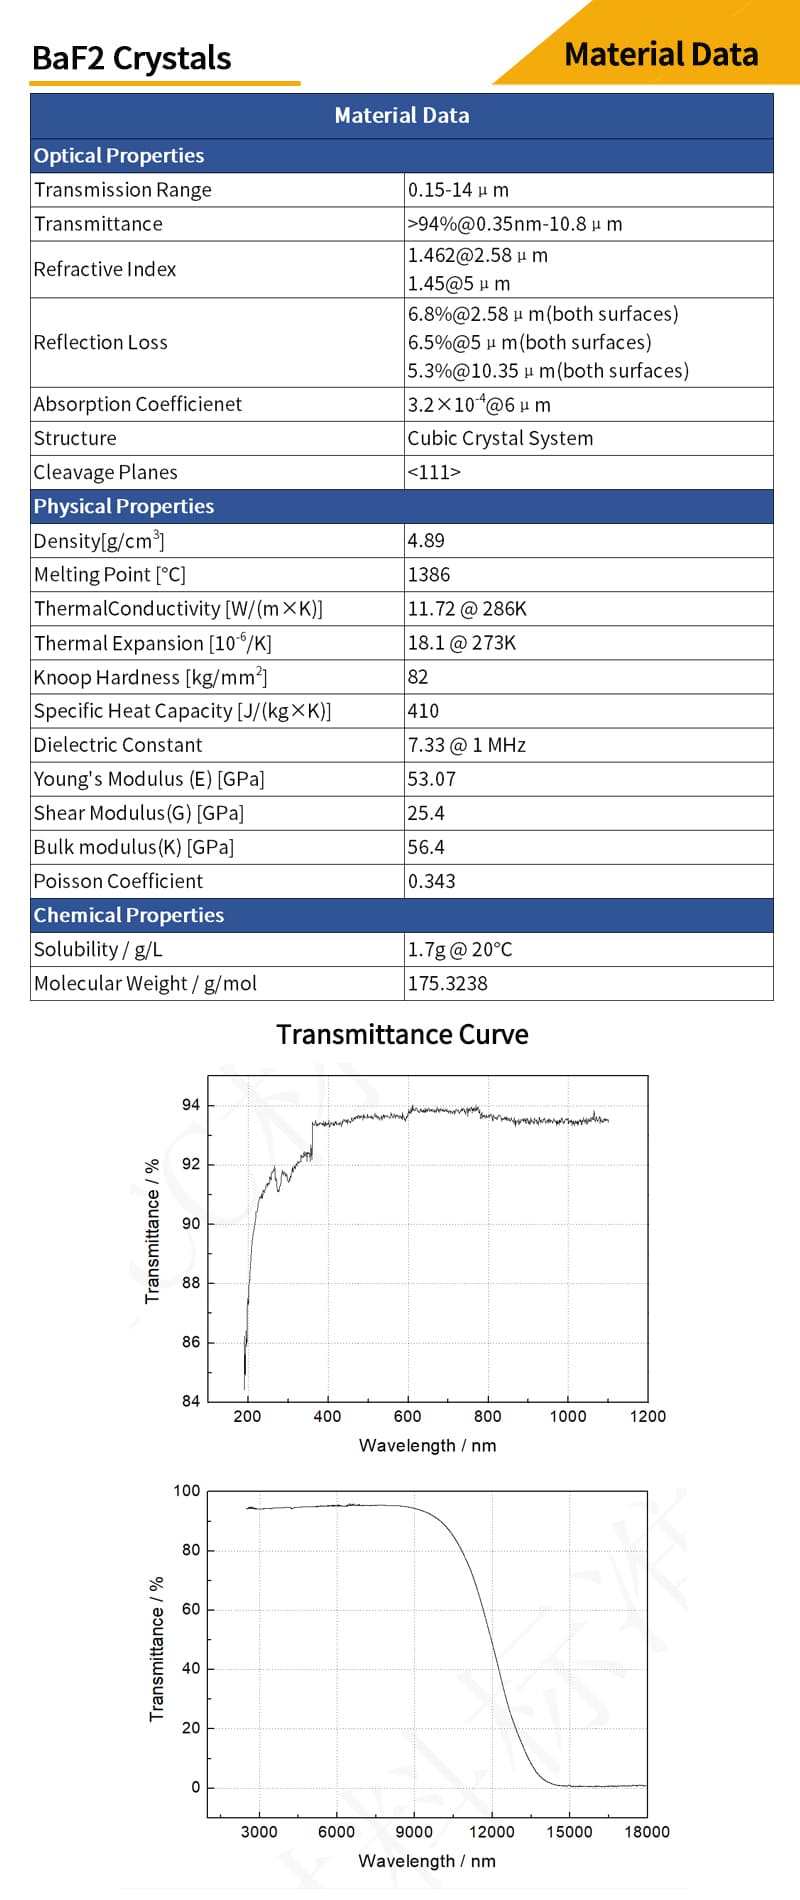 Barium Fluoride meniscus lenses material data and transmittance curves